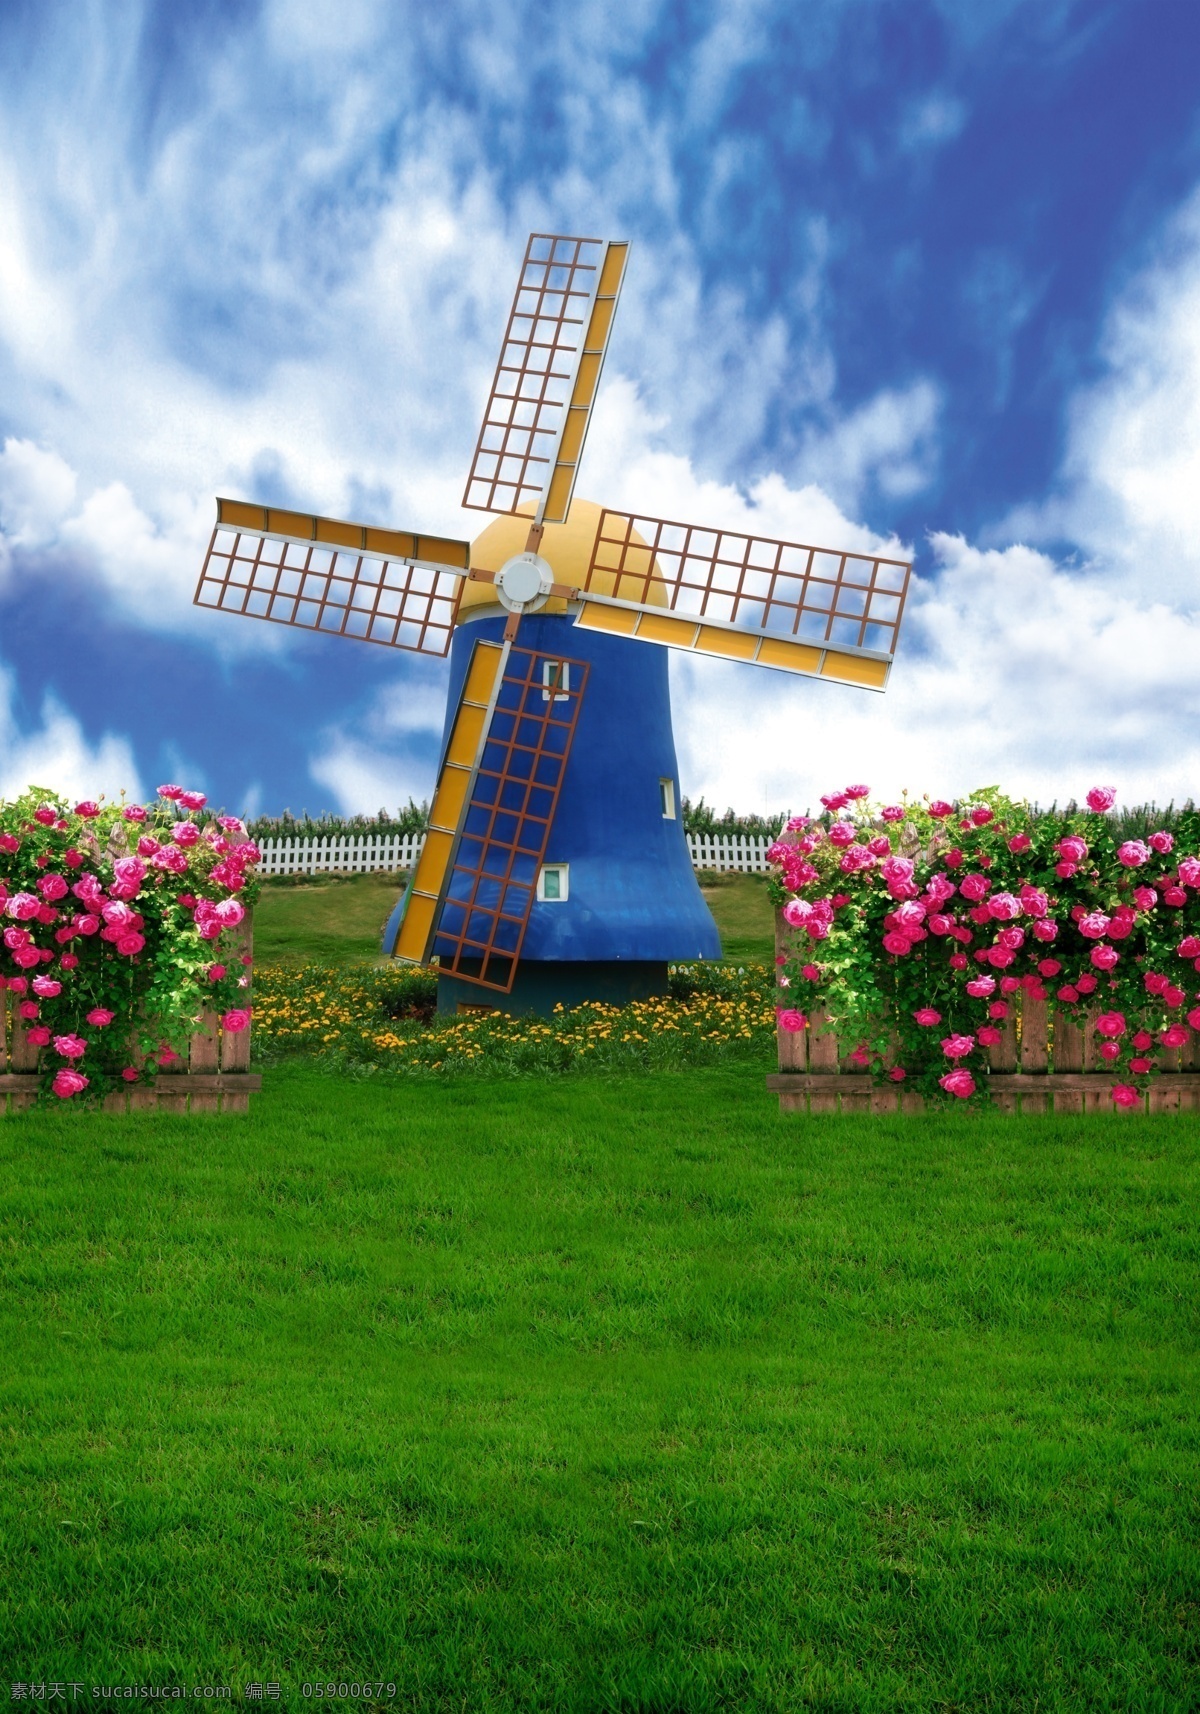 荷兰风车 风车 栅栏 玫瑰 草地 蓝天白云 美丽风景 广告设计模板 源文件